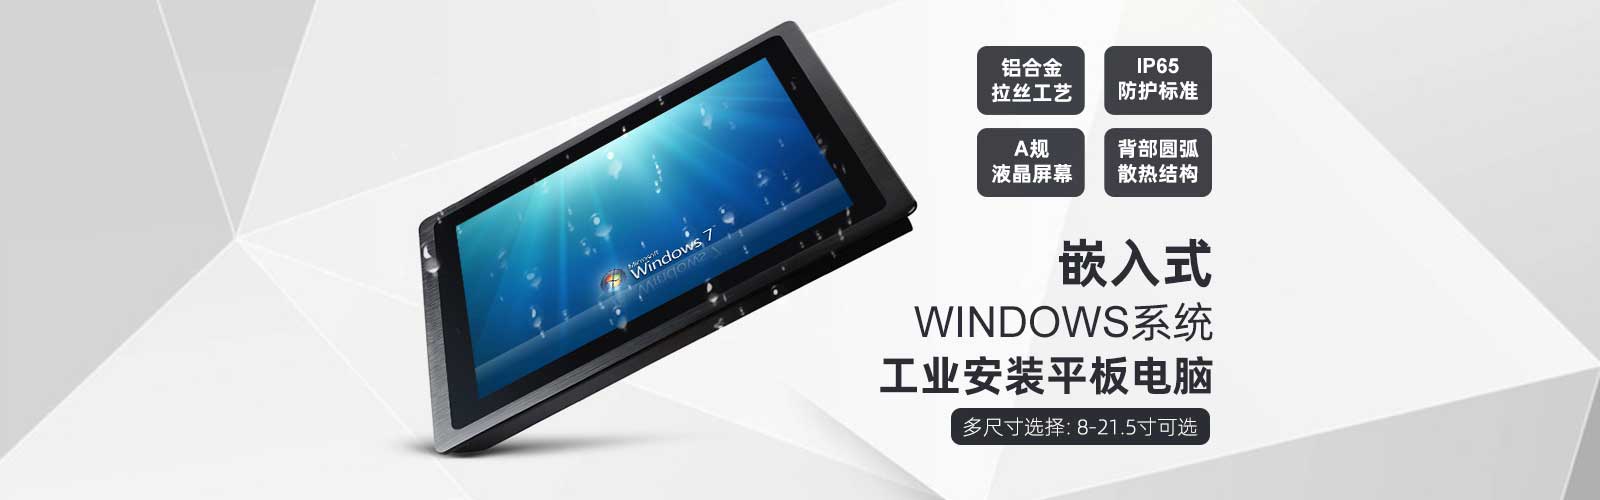 嵌入式安装工业平板电脑-windows系统